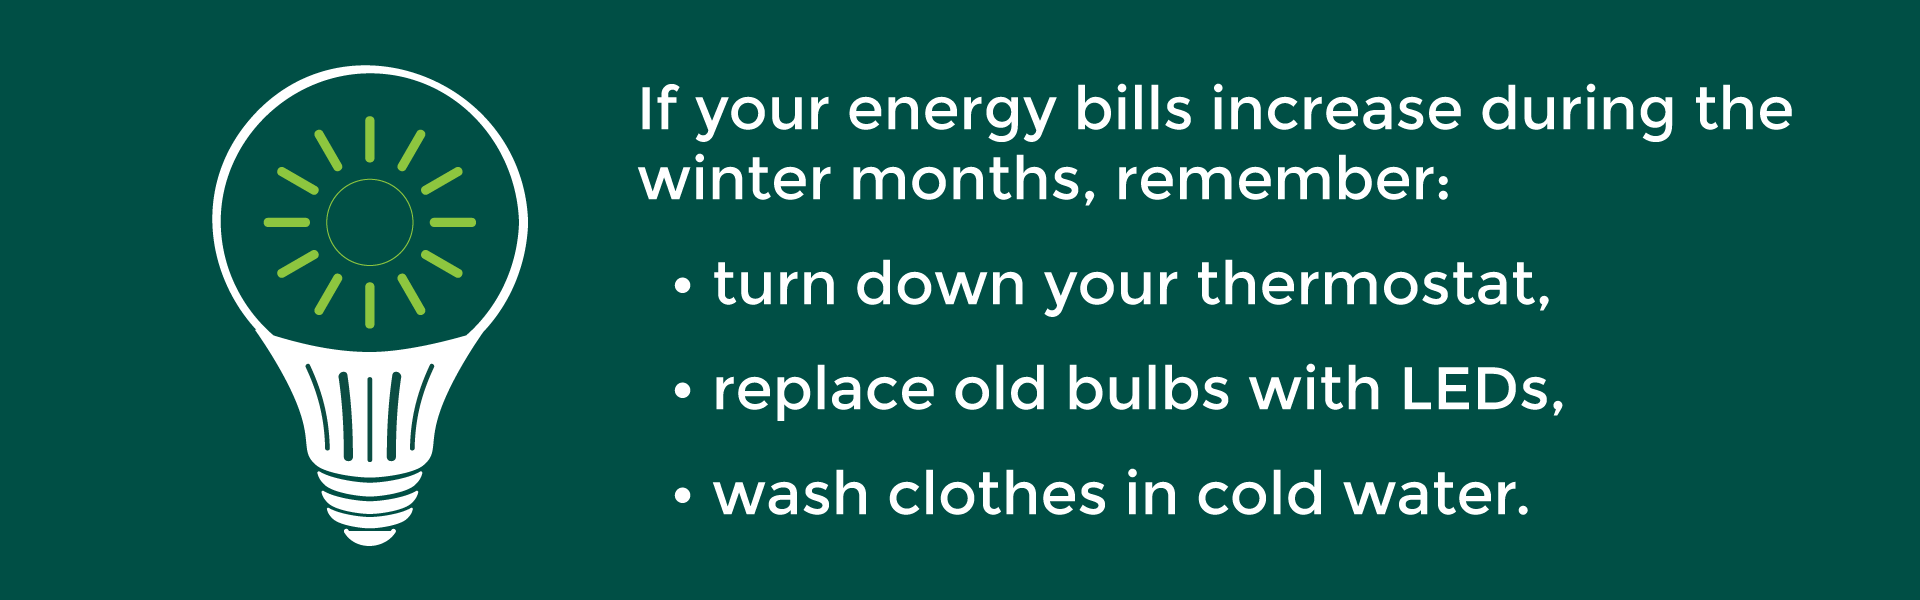 December energy efficiency tip